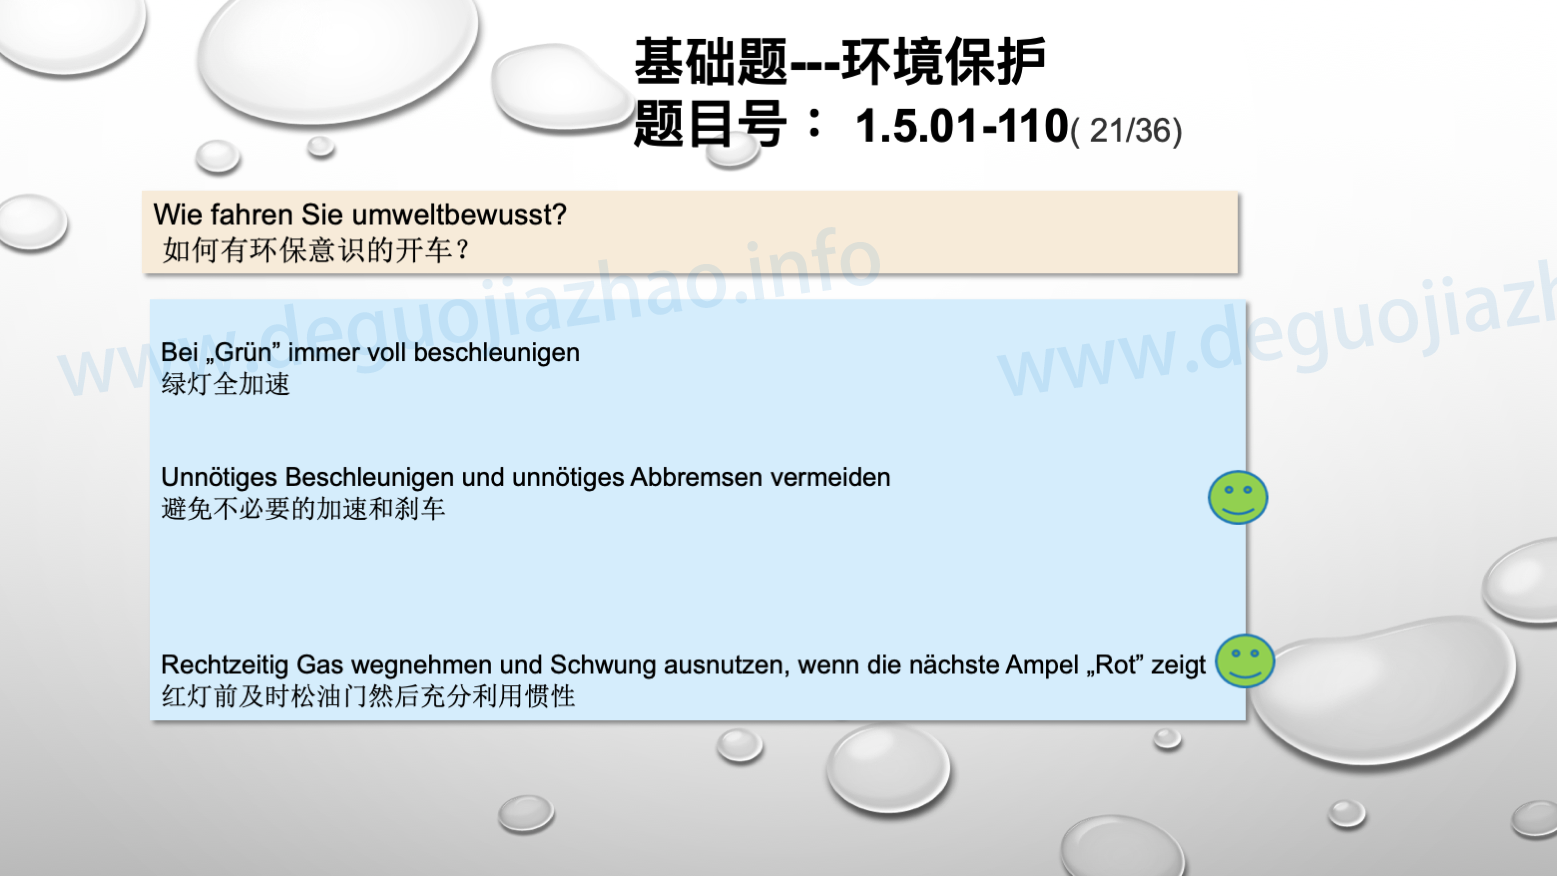 德国驾照官方理论题 章节 1.5.01 环境保护